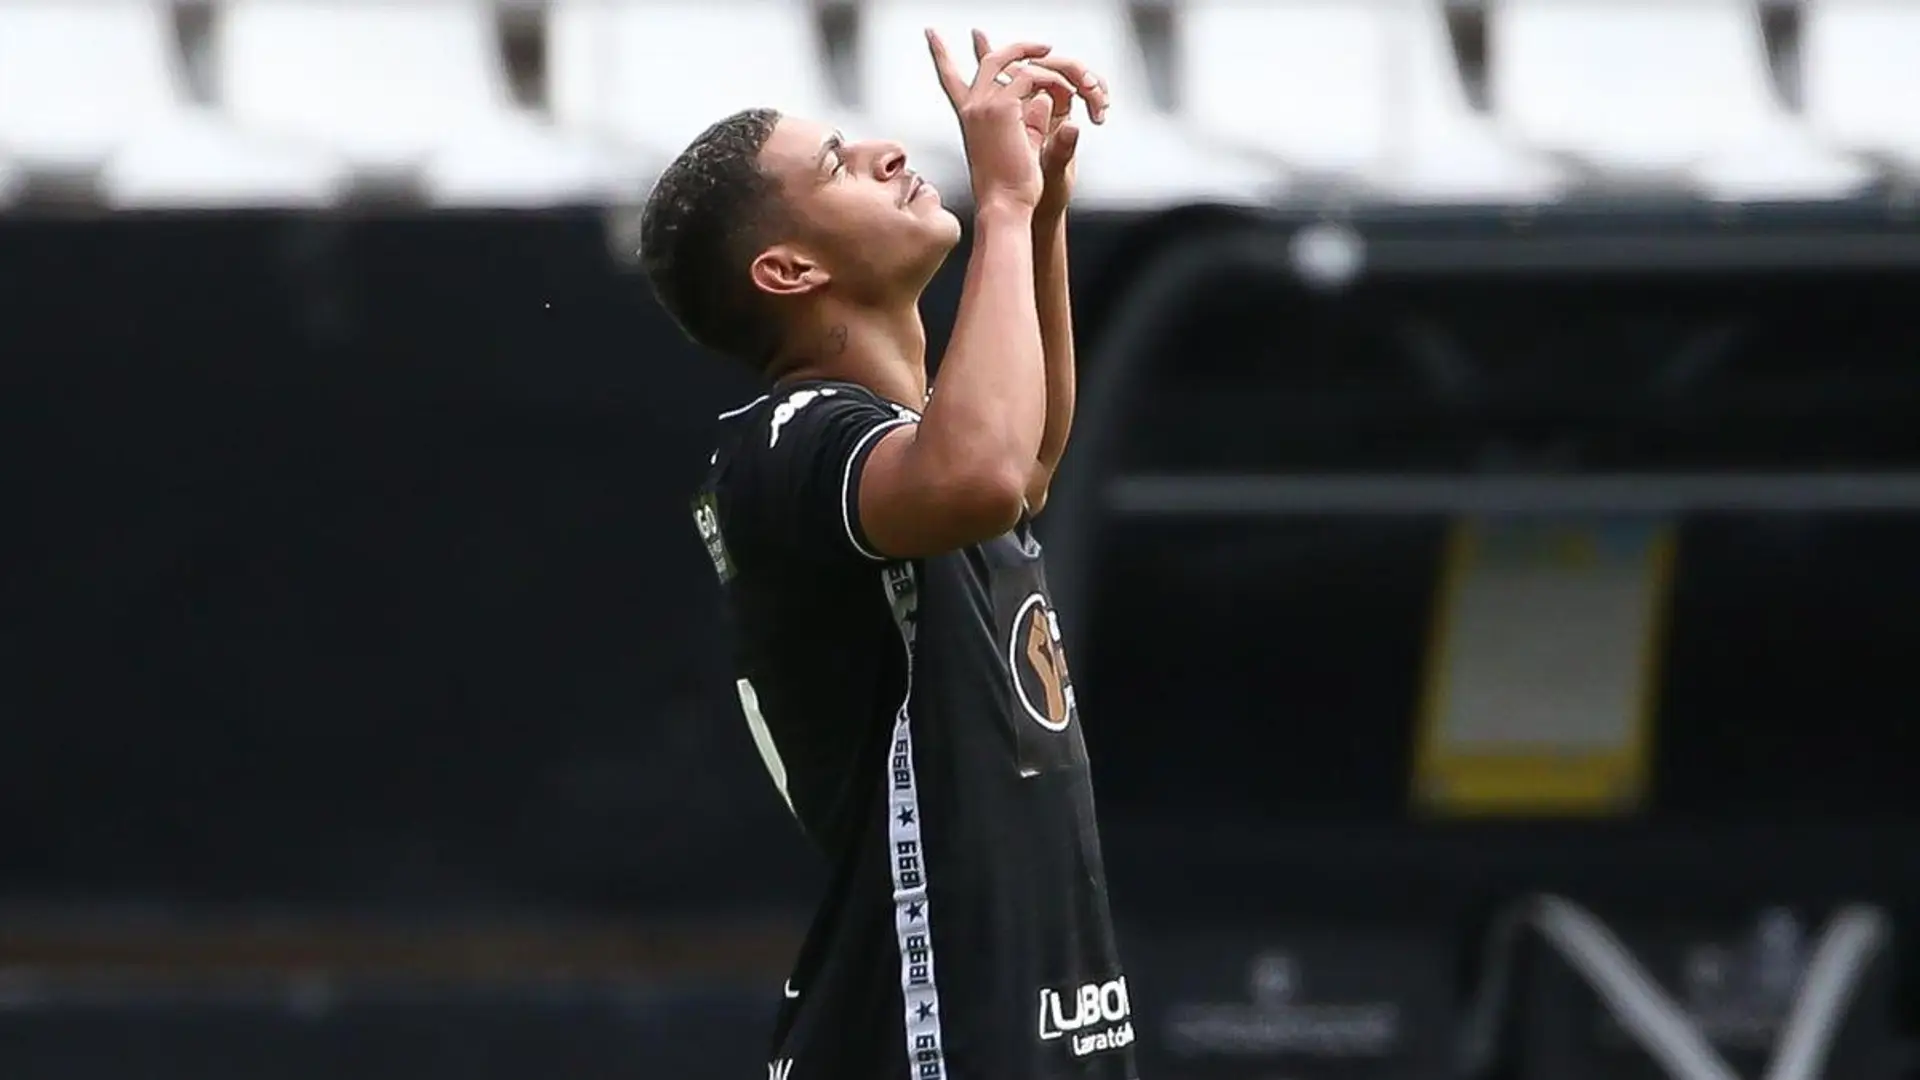 "Il va super vite, il est puissant", l'ancien joueur de Ligue 1 aujourd'hui à Botafogo, Salomon Kalou parle des points forts de Luis Henrique